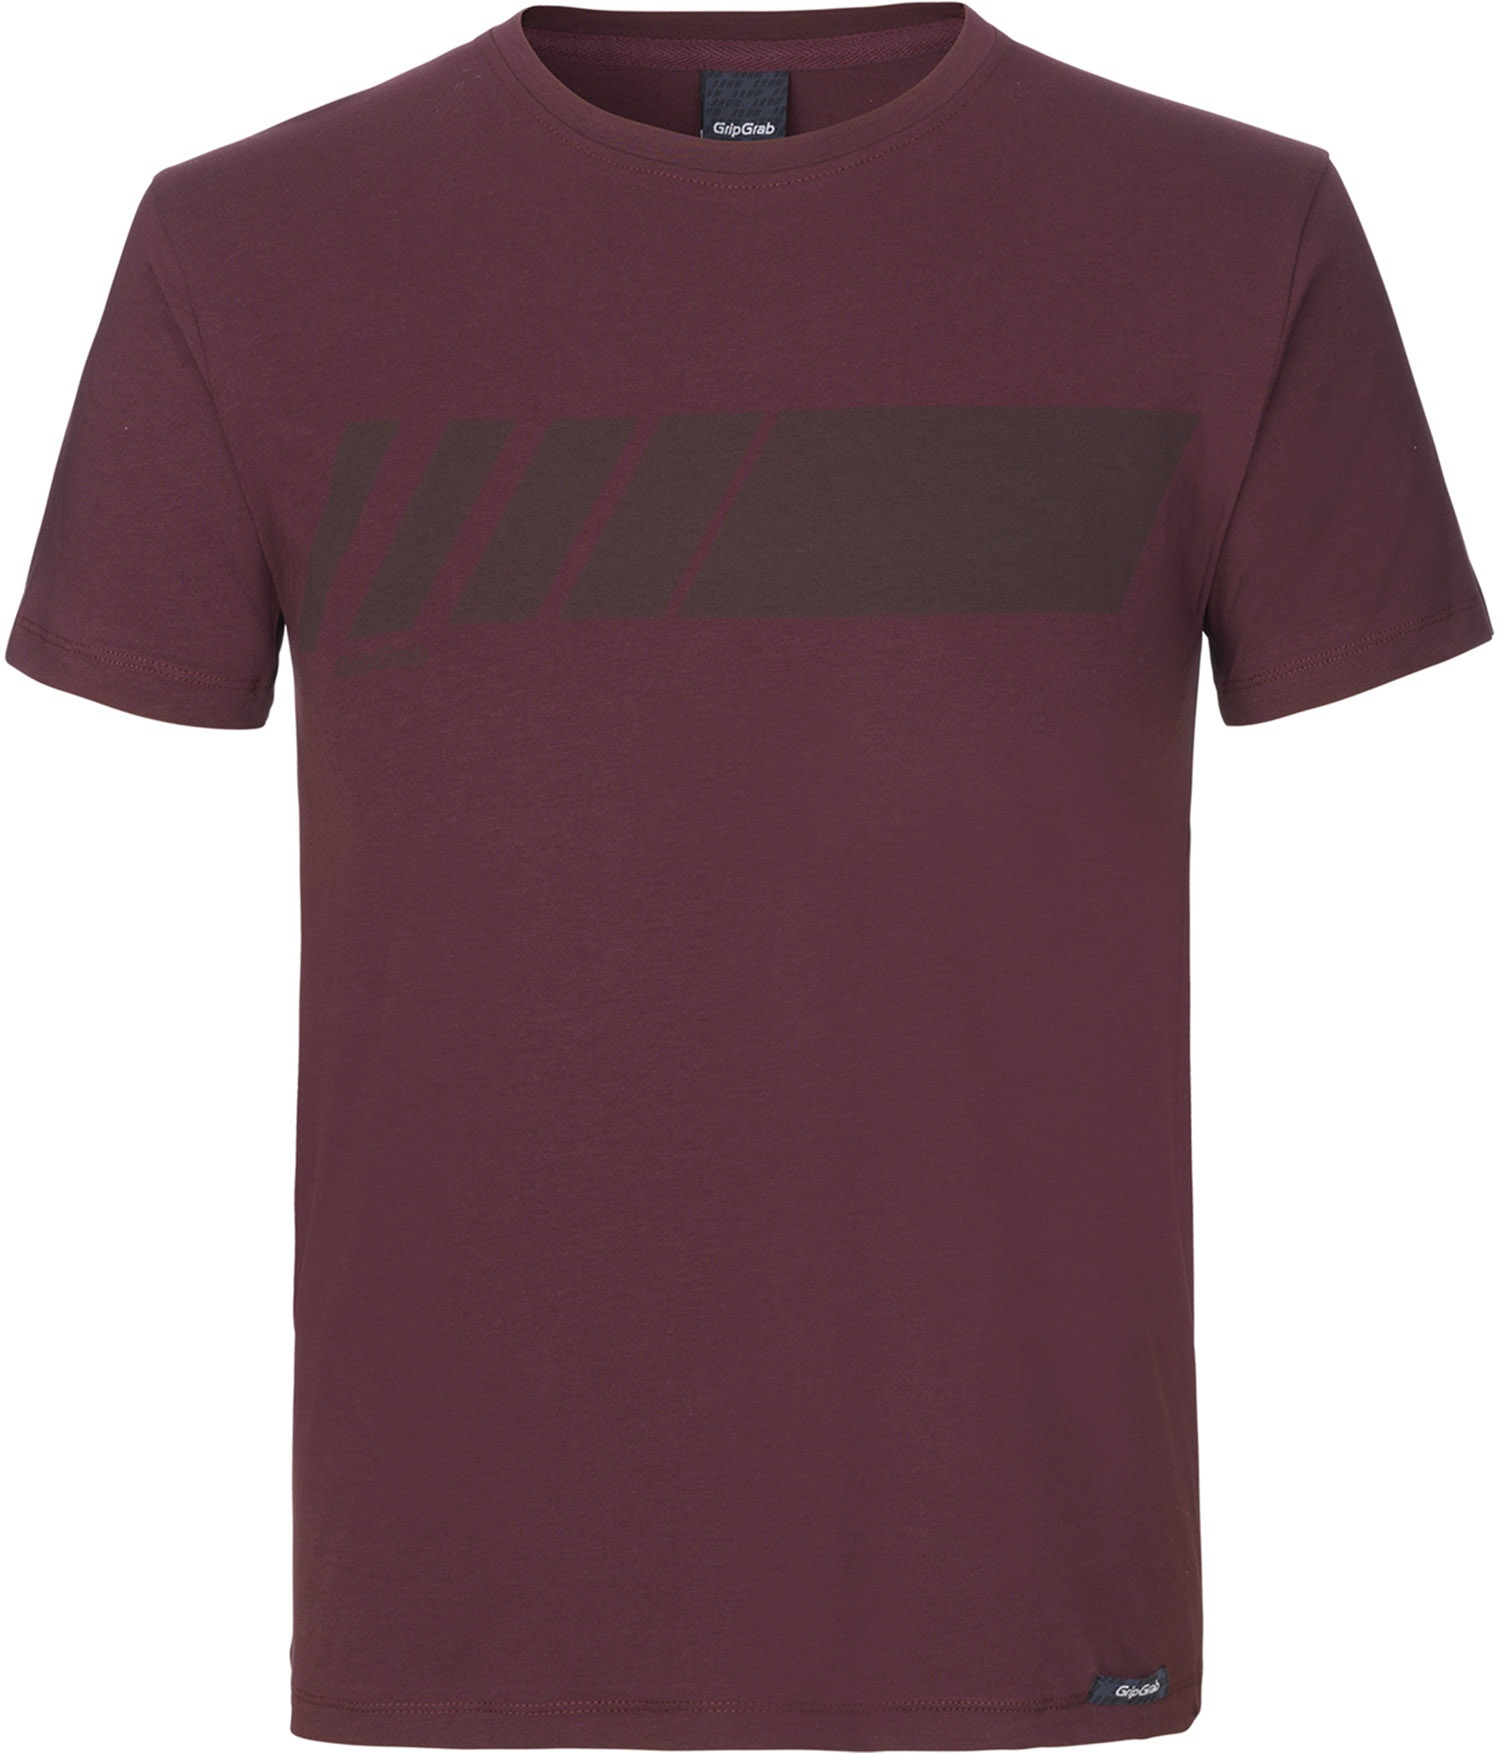 Beklædning - Merchandise - GripGrab Racing Stripe Kortærmet Økologisk Bomulds-T-shirt - Mørk Rød